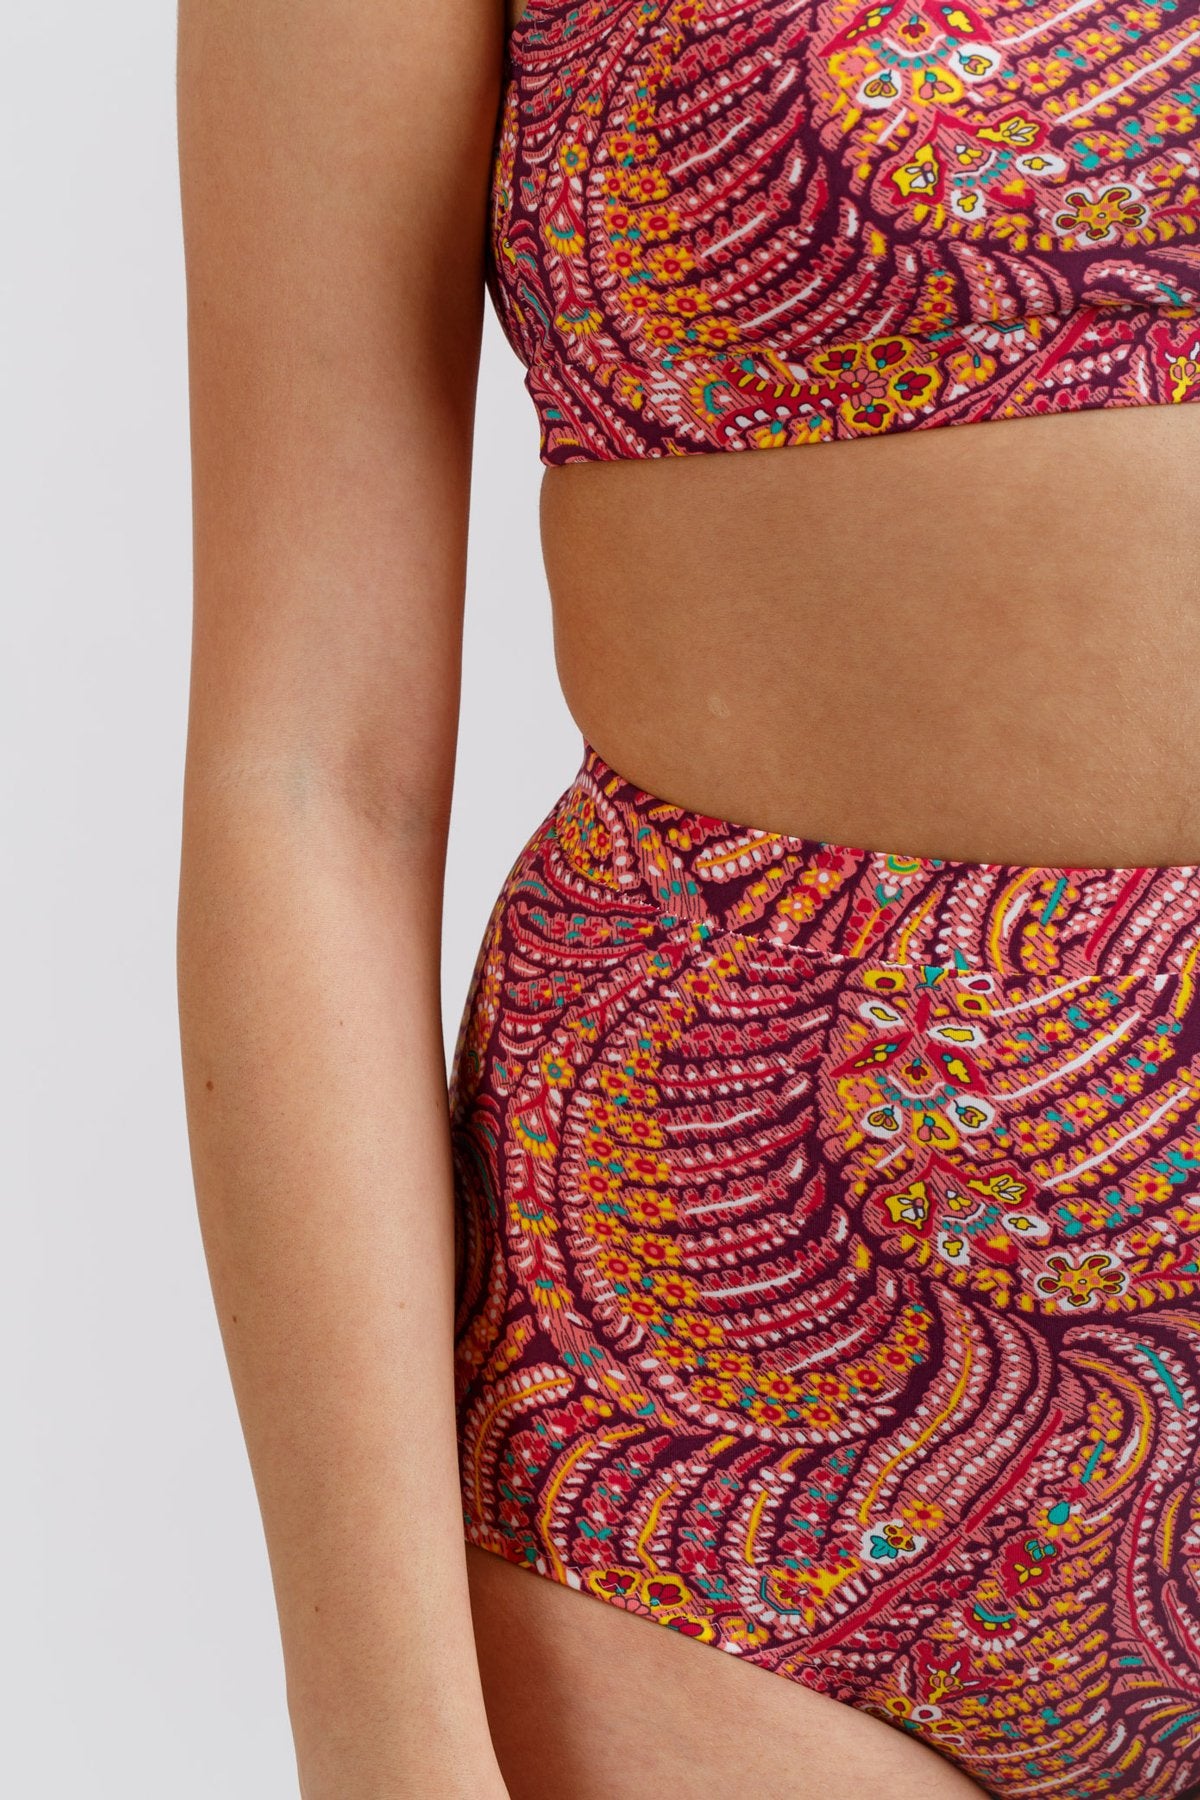 Megan Nielsen - Cottesloe Swimsuit Sewing Pattern  Sew Not Complicated –  Sew Not Complicated Atelier de Couture